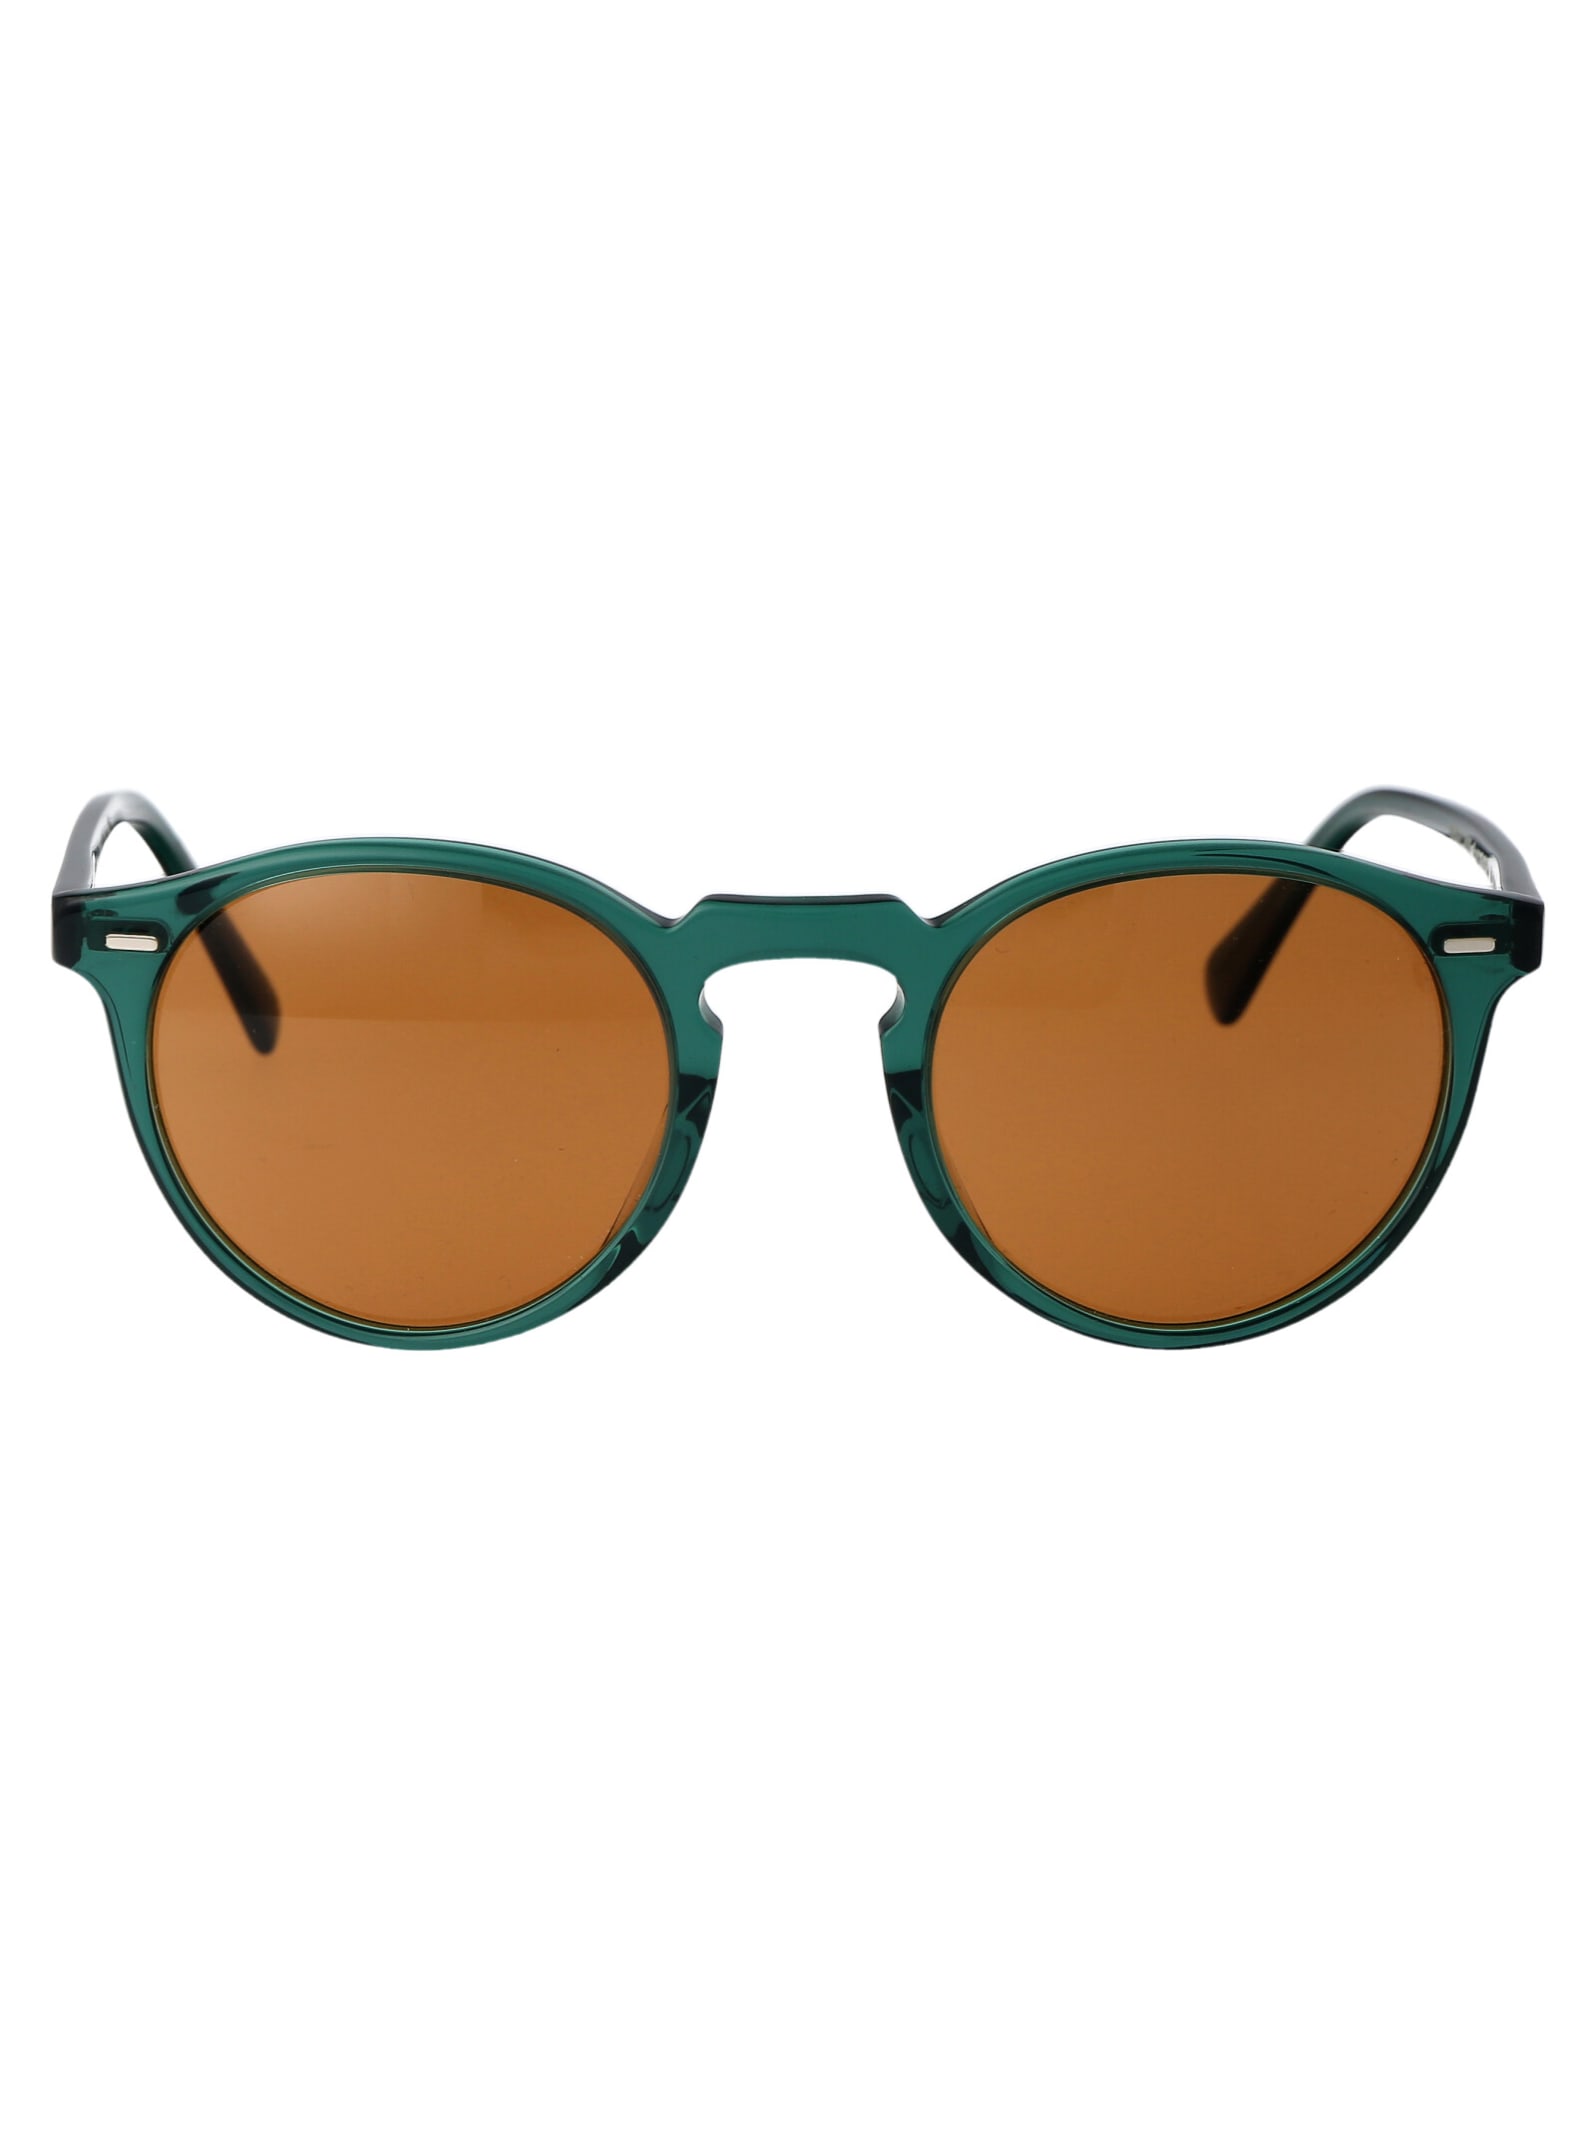 Gregory Peck Sun Sunglasses